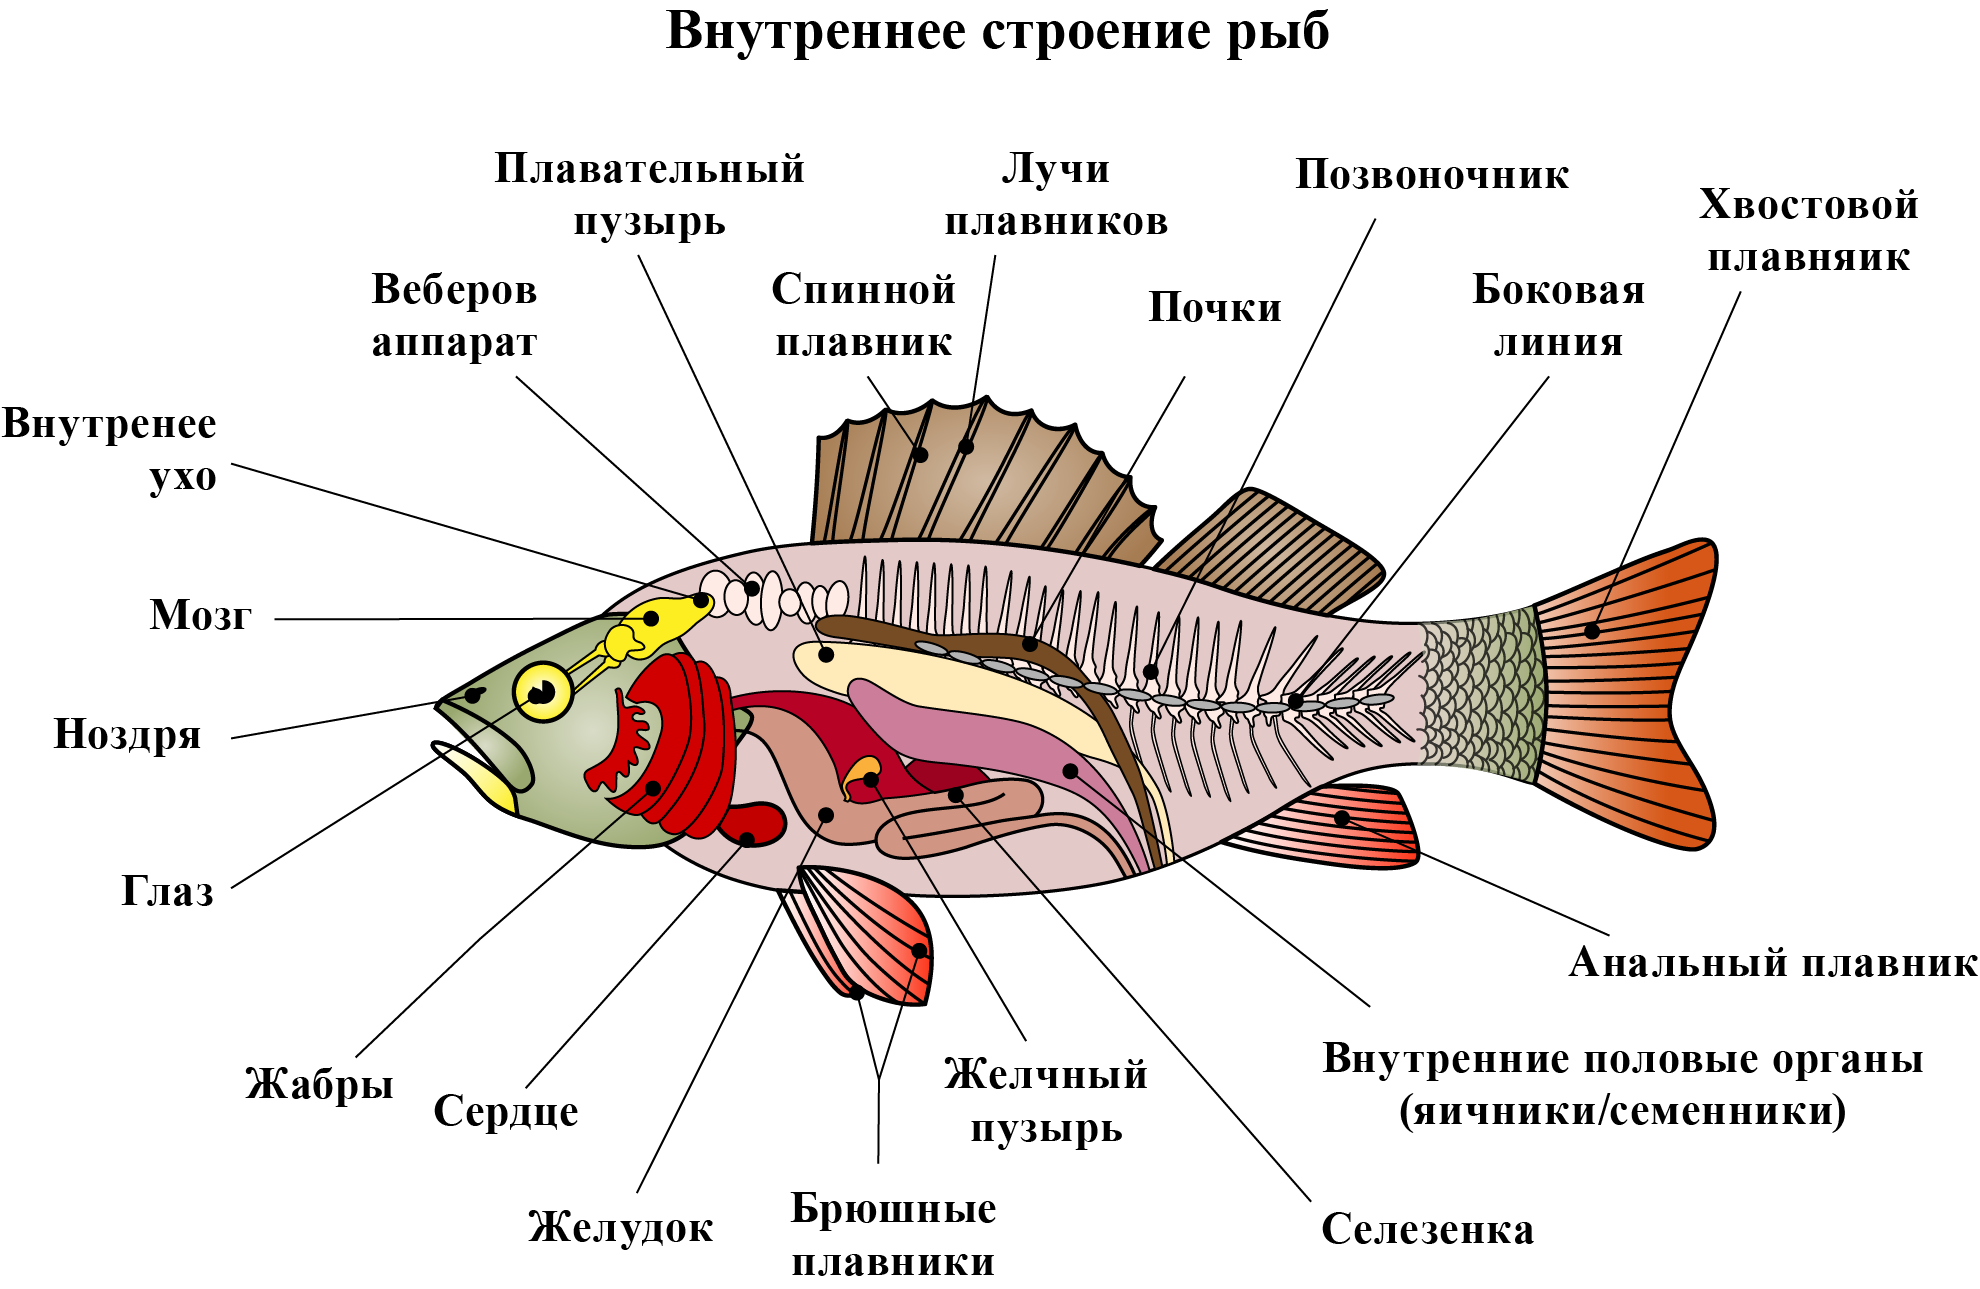 Рыбы биология 2 класс. Внутреннее строение рыбы 7 класс пищеварительная система. Внутреннее строение рыбы схема. Внутреннее строение рыб 7 класс скелет. Внутреннее строение костистой рыбы схема.